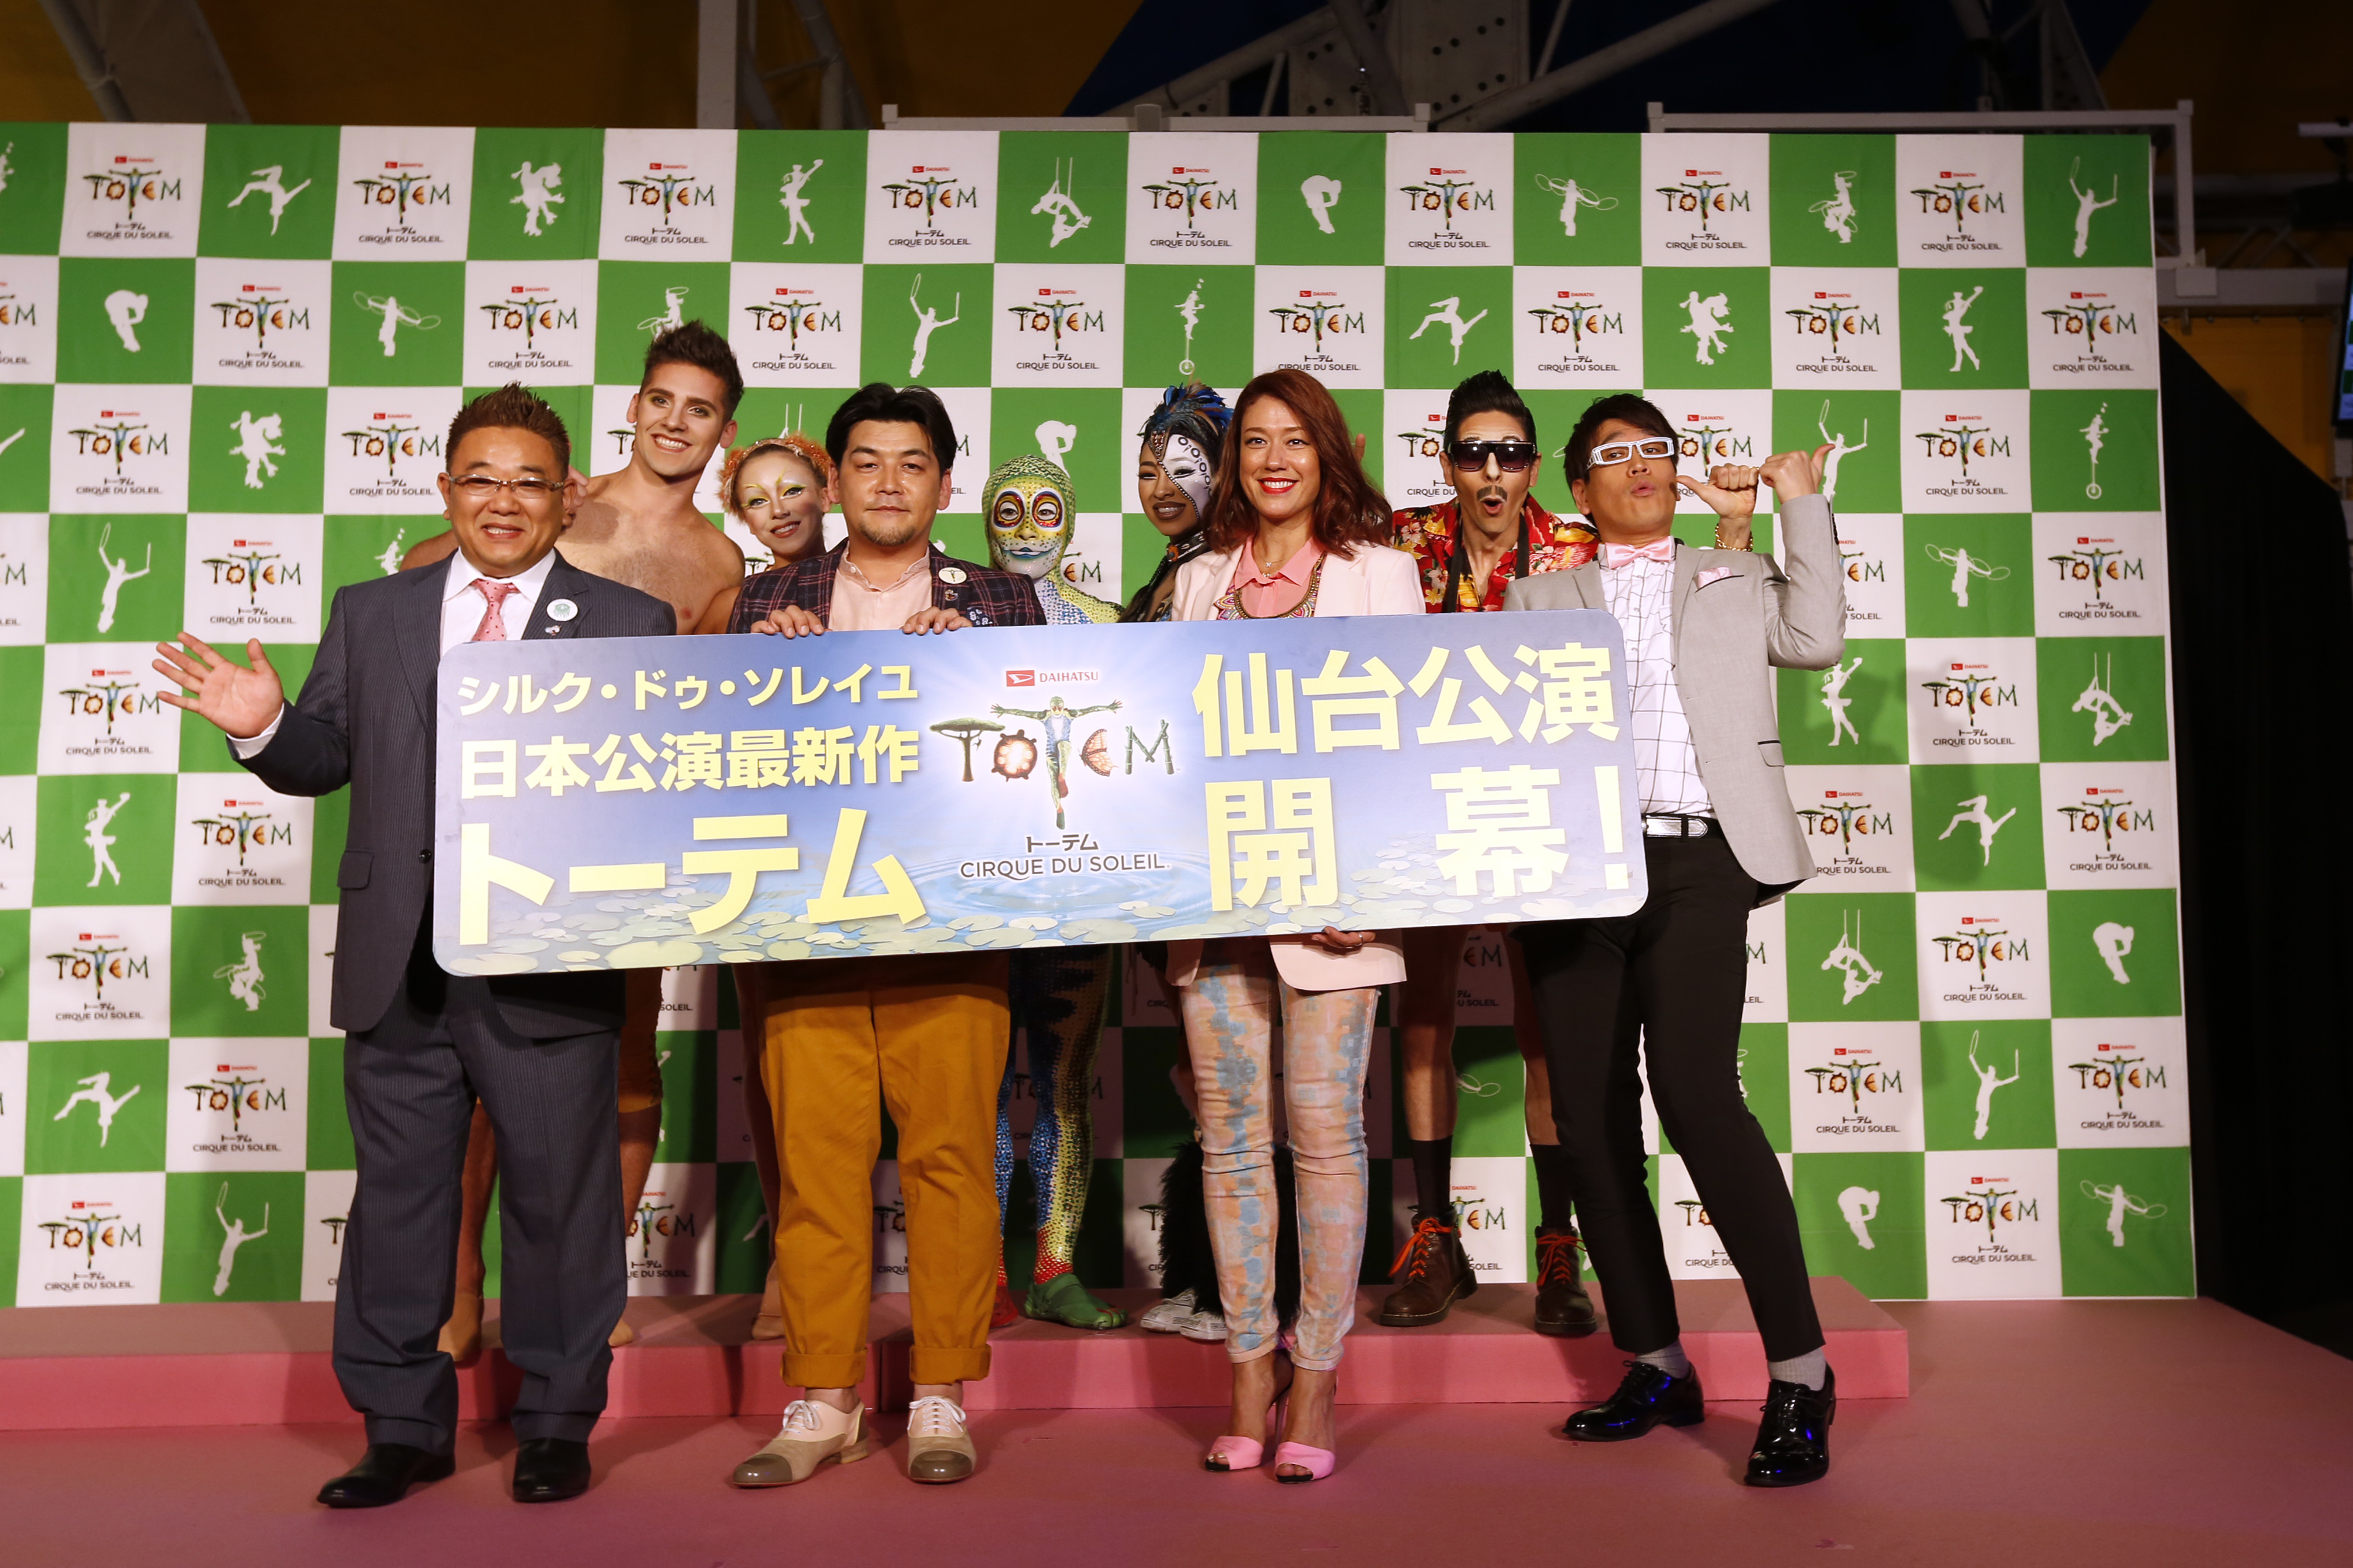 シルク ドゥ ソレイユ ダイハツ トーテム 仙台公演4 6 木 ついに開幕 株式会社キョードー東北のプレスリリース